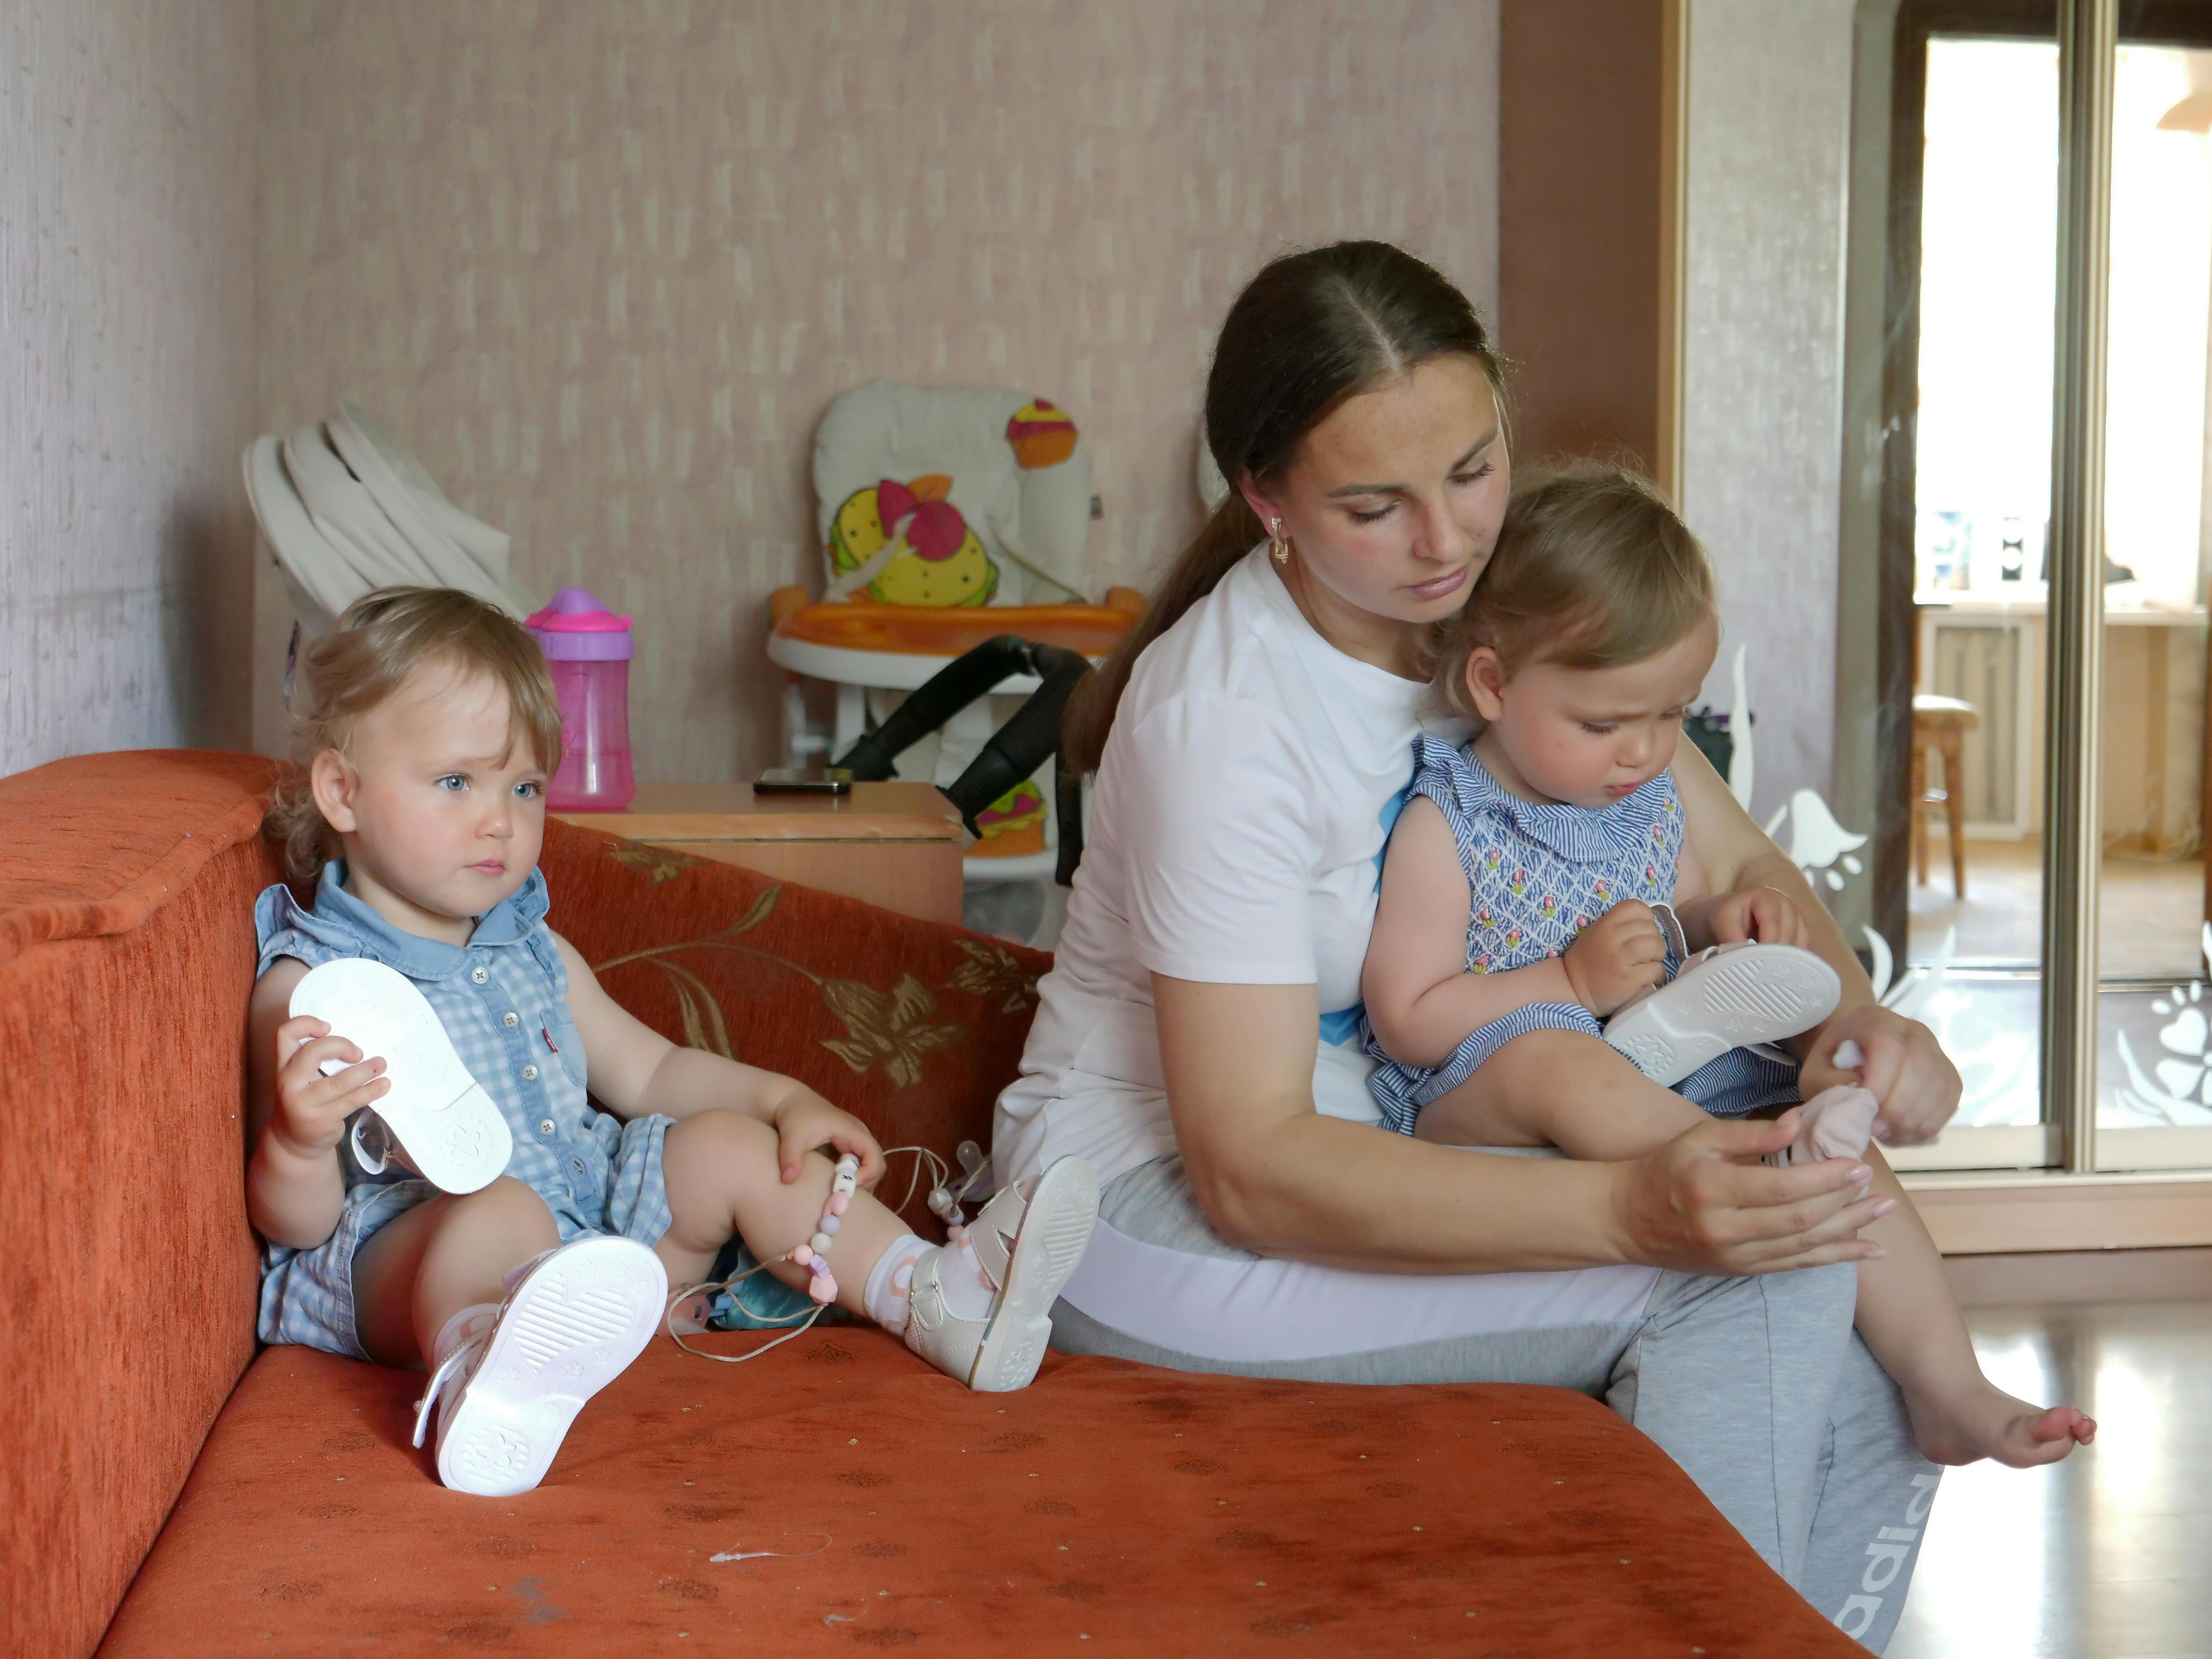 Yulia Supereka, 33 anni, mette scarpe e calzini ai suoi gemelli di due anni Mariia e Sophia prima di una passeggiata. La famiglia di Yulia, fuggita dagli orrori della guerra a Kiev, ha ricevuto una mano grazie al programma di assistenza in denaro dell'UNICEF.